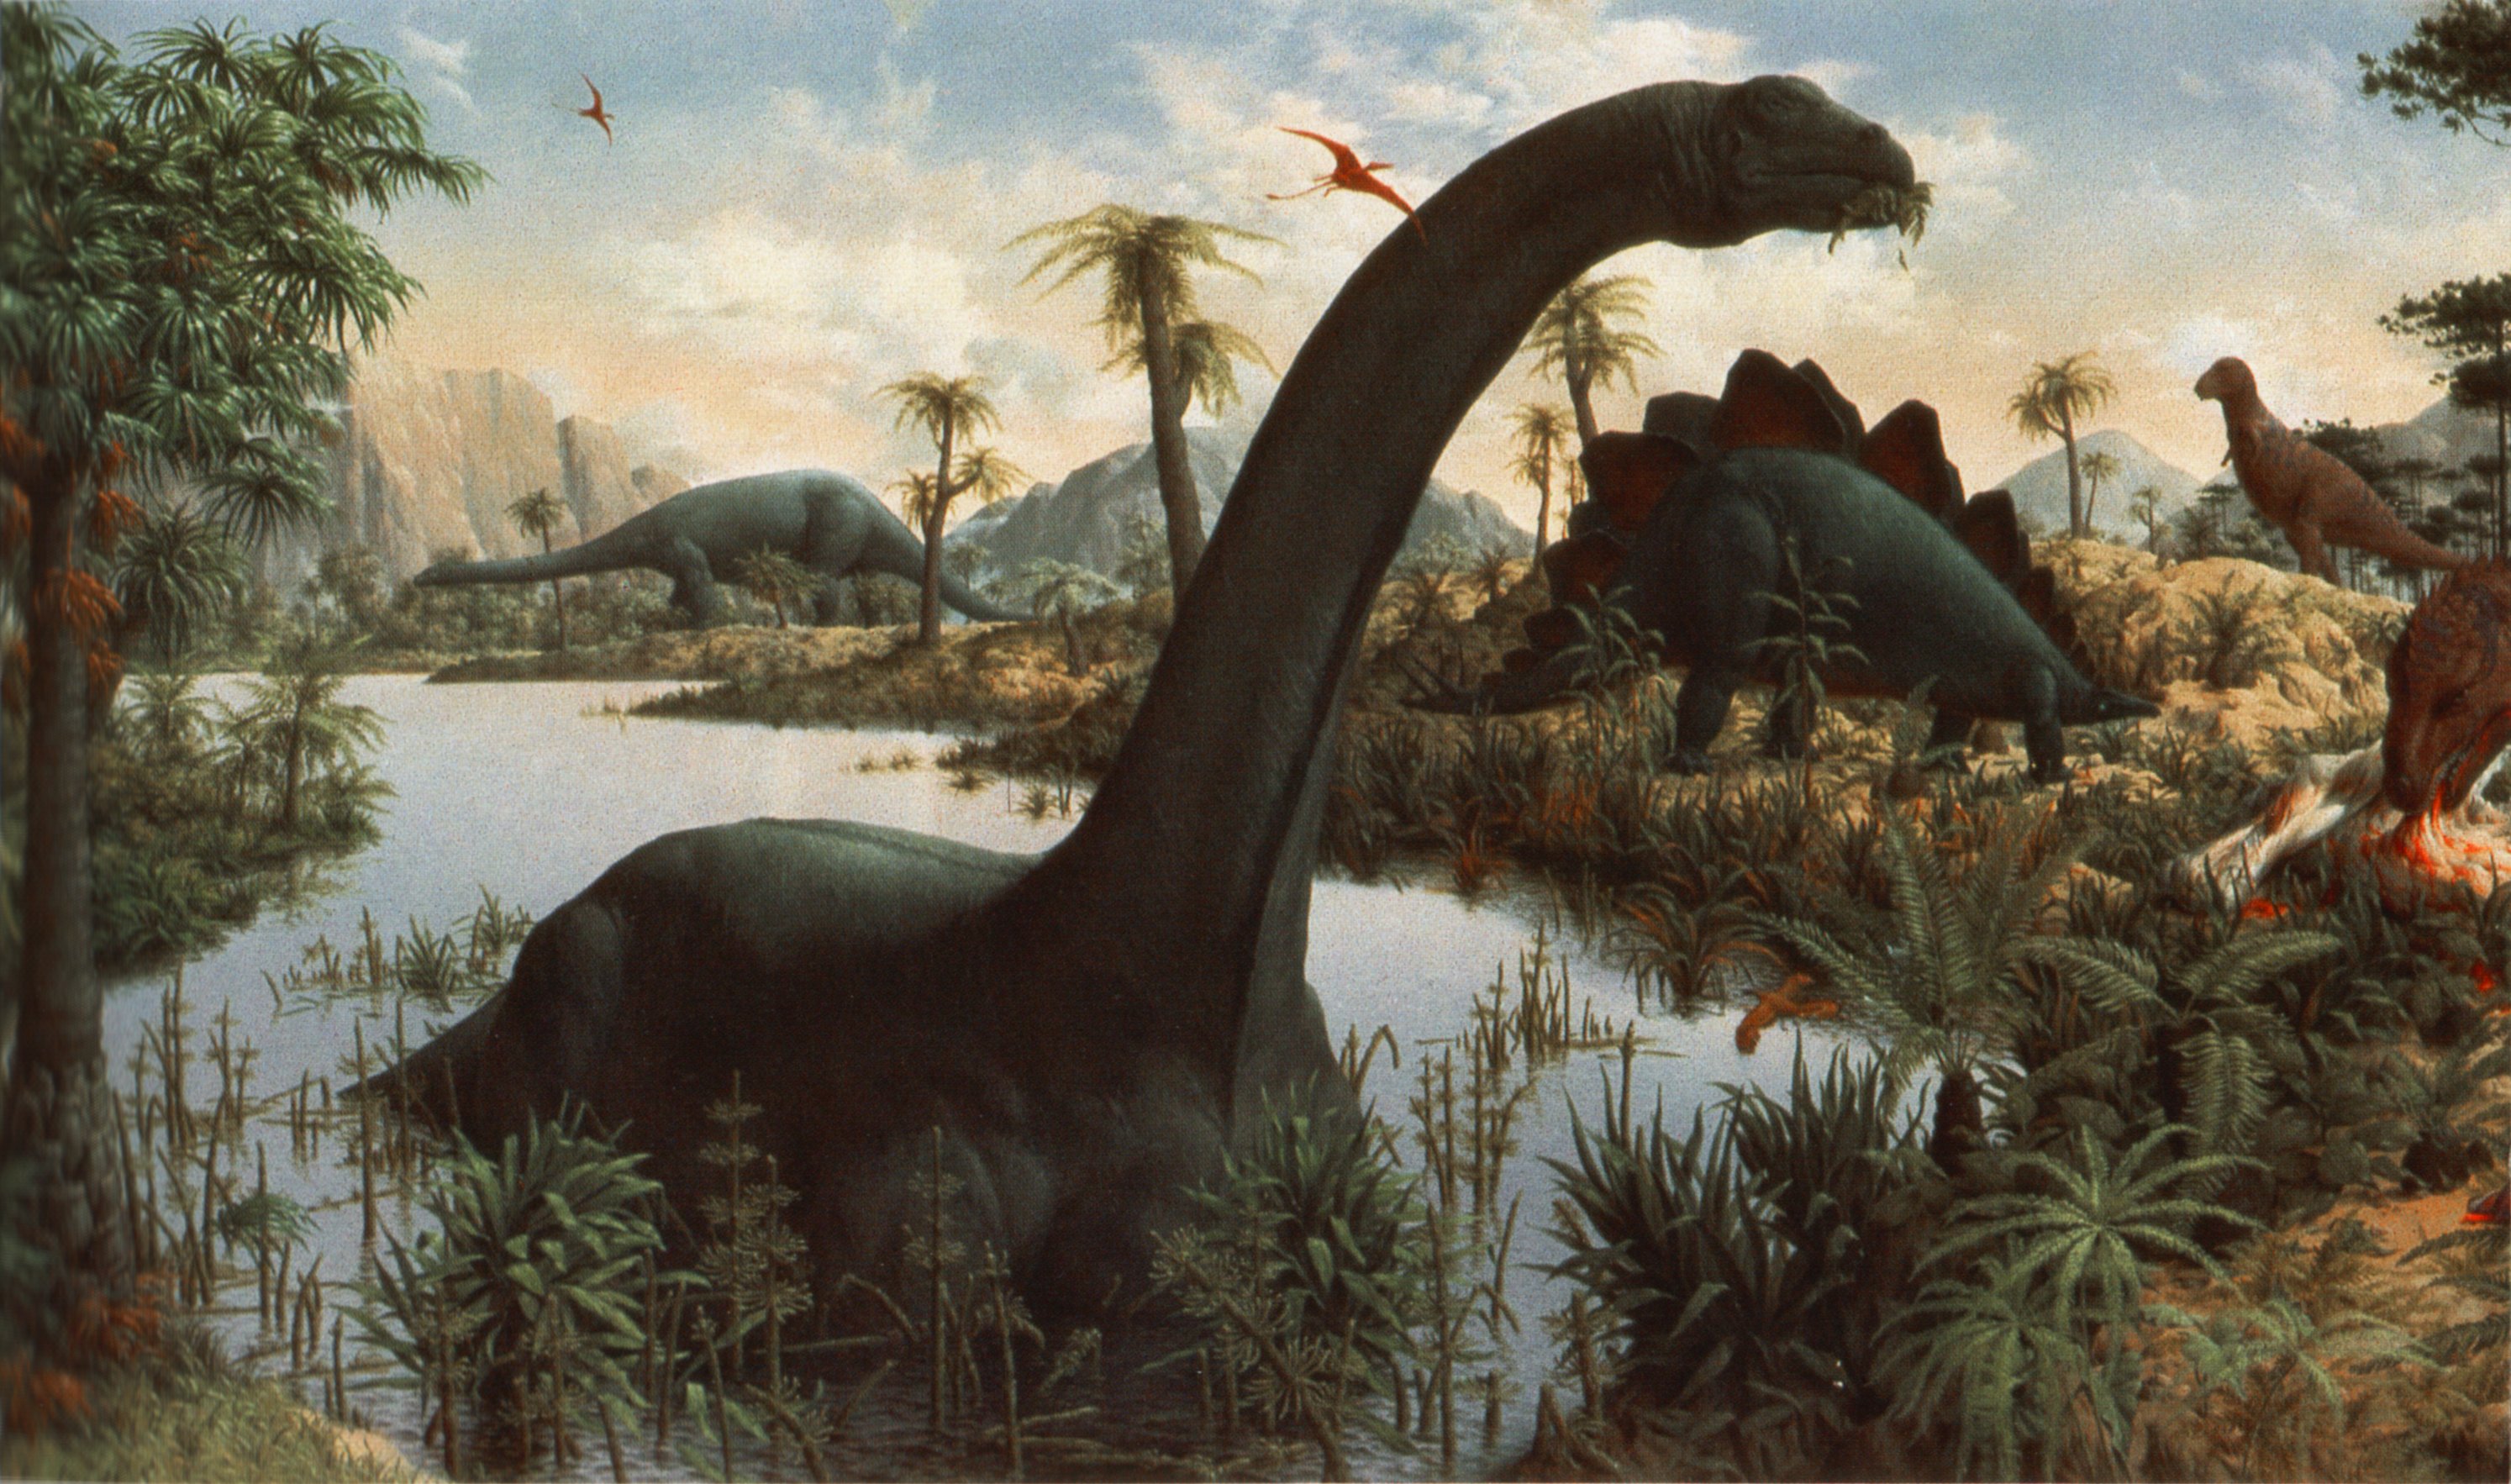 Zallinger1947-mural-brontosaurus.jpeg